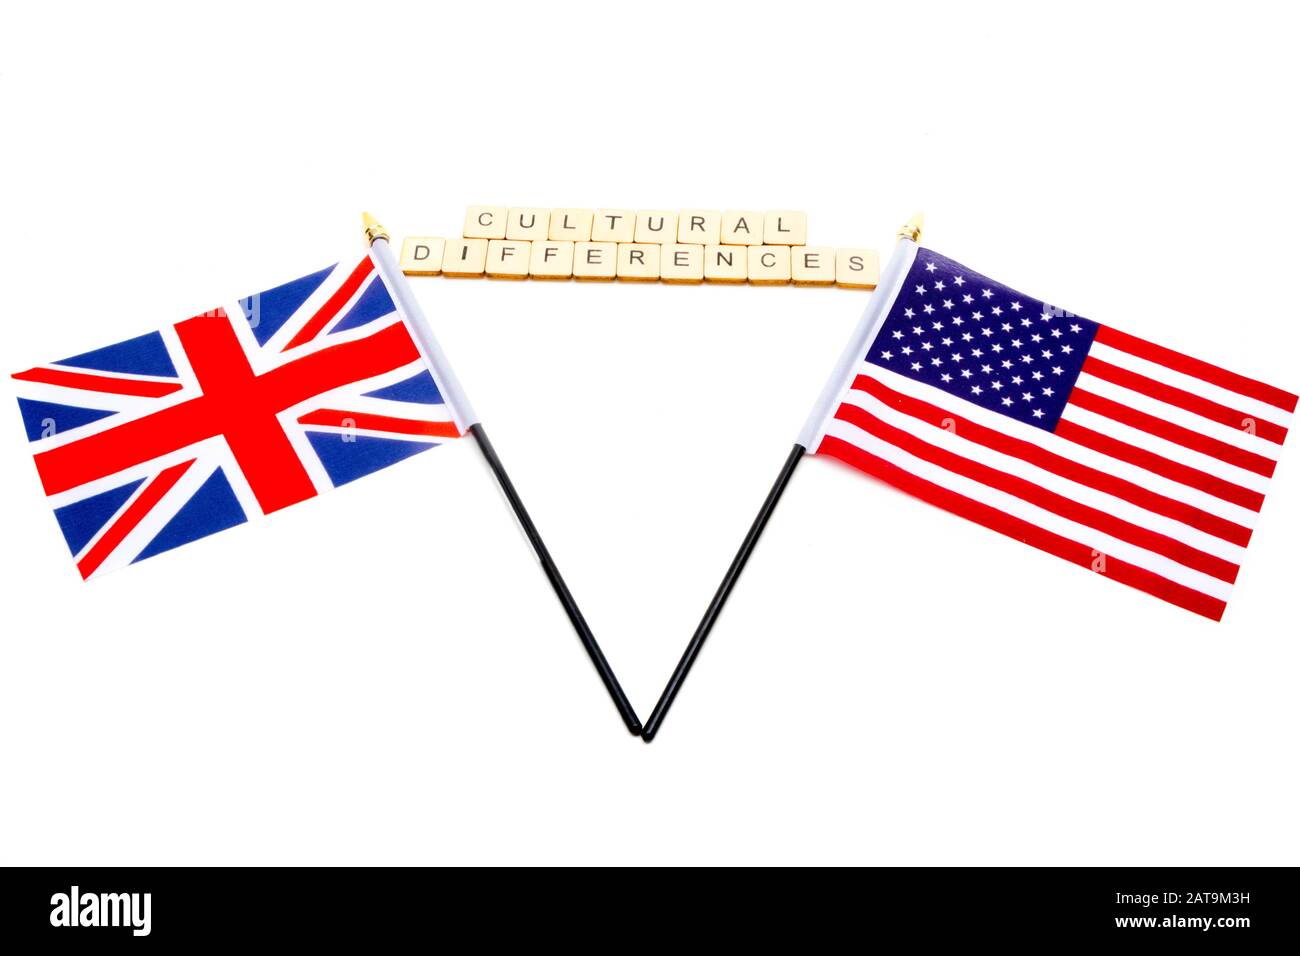 Die Flaggen des Vereinigten Königreichs und der Vereinigten Staaten isolierten sich auf einem weißen Hintergrund mit einem Zeichen, das kulturelle Unterschiede liest Stockfoto